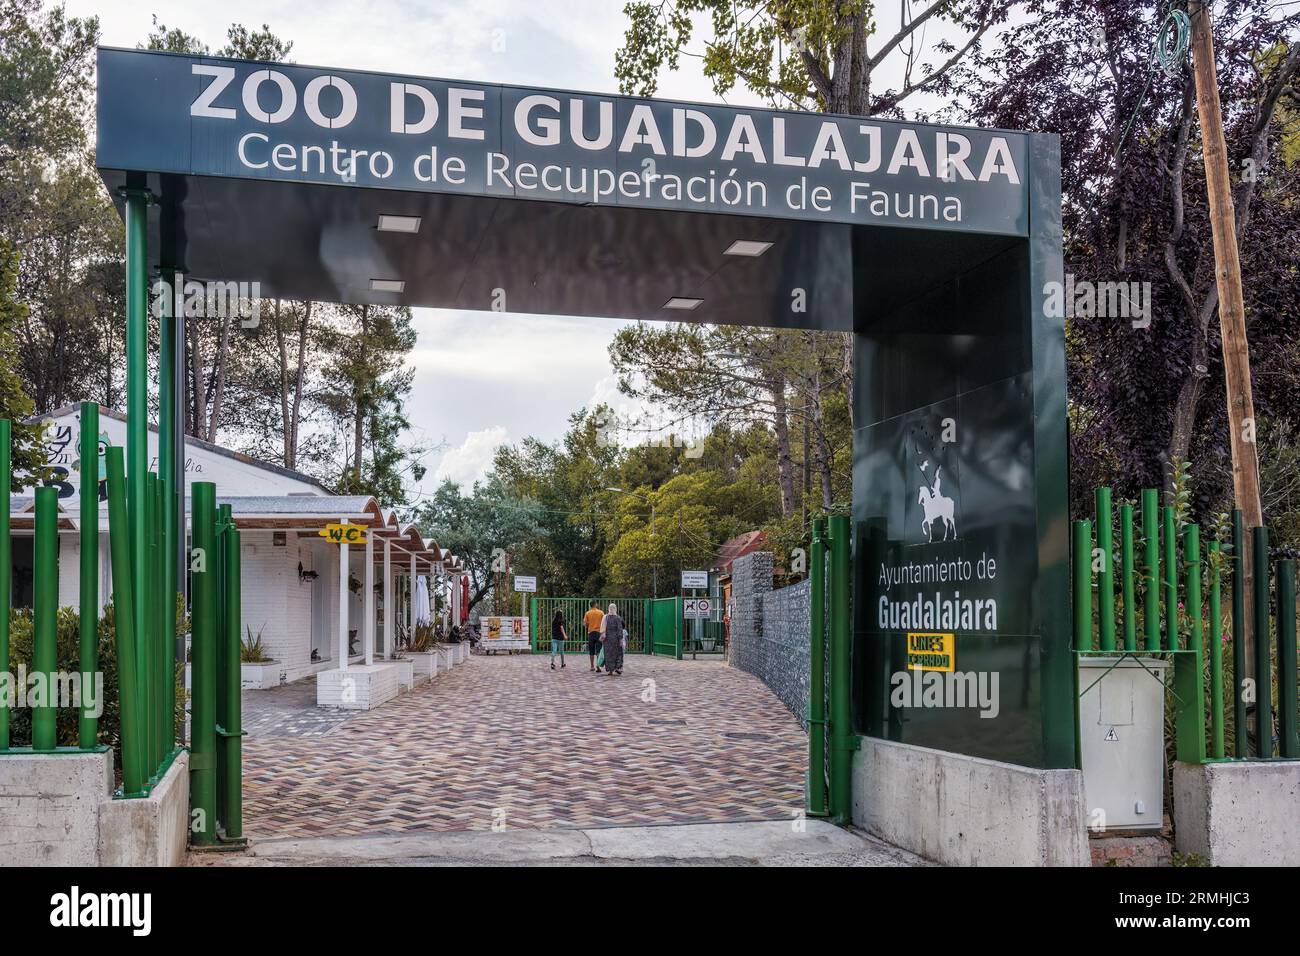 Städtischer Zoo von Guadalajara, Jahr 1985. Gründungsmitglied von AIZA, Iberische Vereinigung der Zoos und Aquarien, bestehend aus Zoos in Spanien und Portugal. Stockfoto